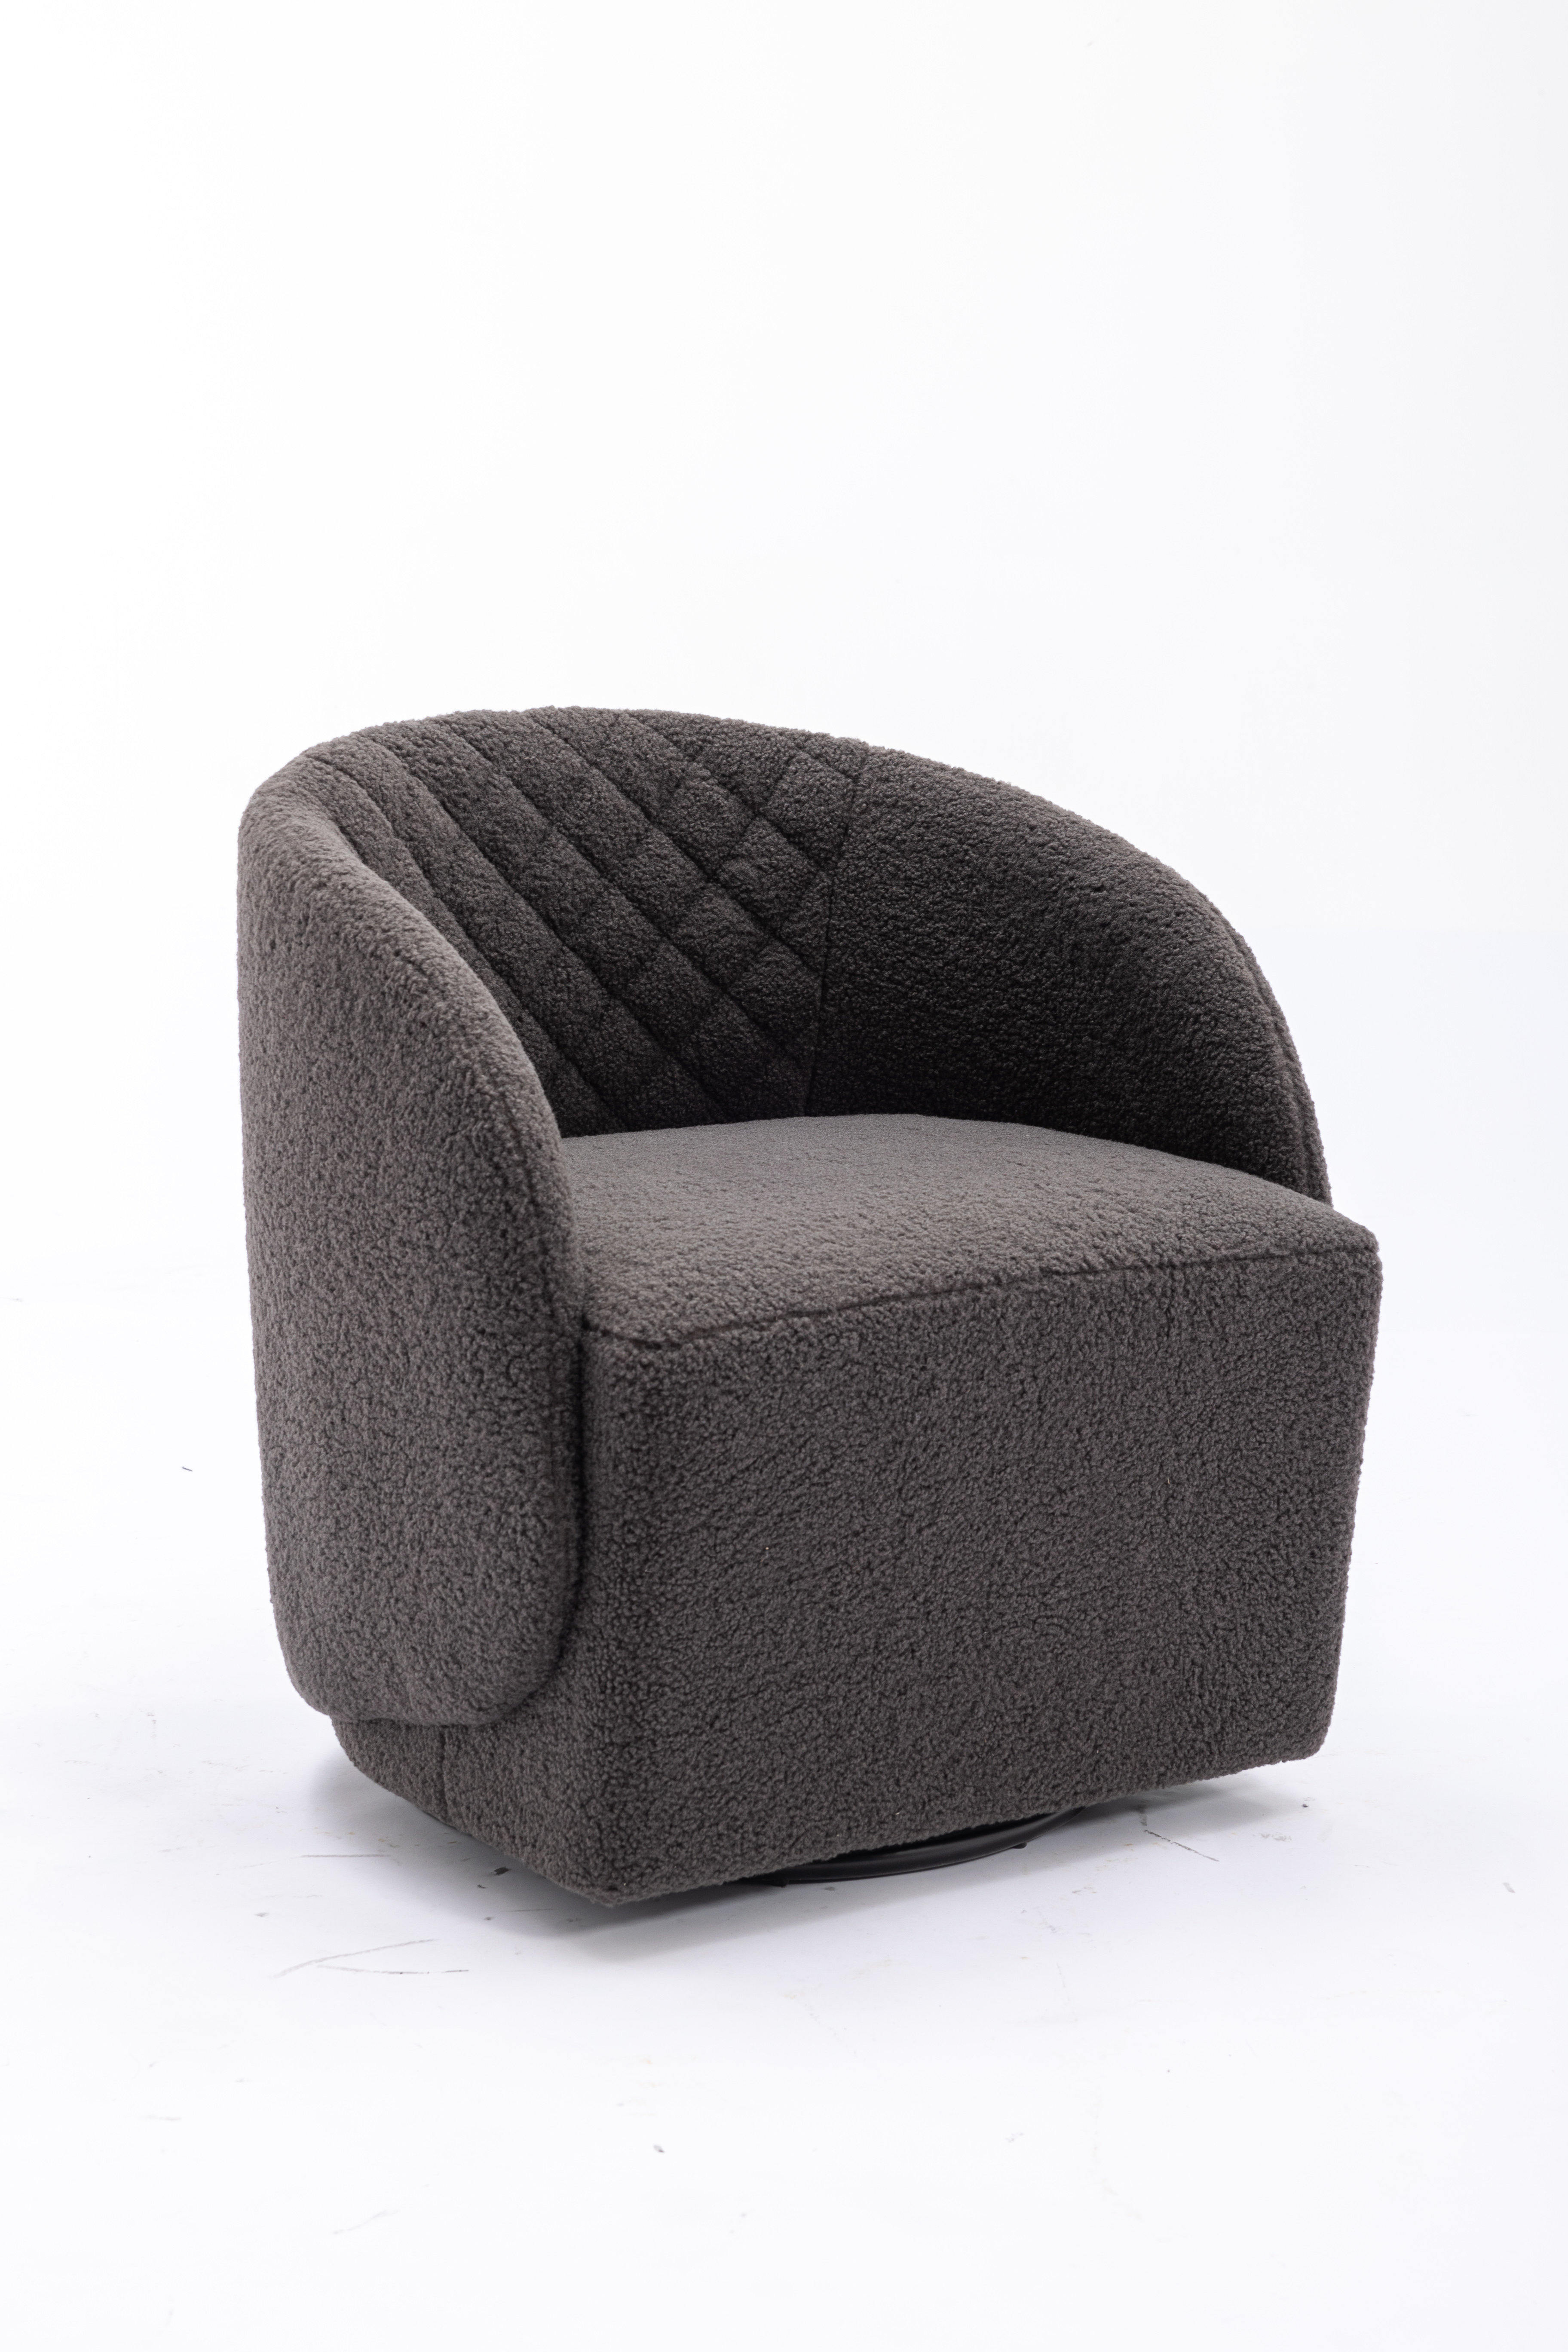 https://assets.wfcdn.com/im/31810322/compr-r85/2655/265524415/contemporary-circular-emphasis-chair-soft-cushion-360-degree-rotation.jpg